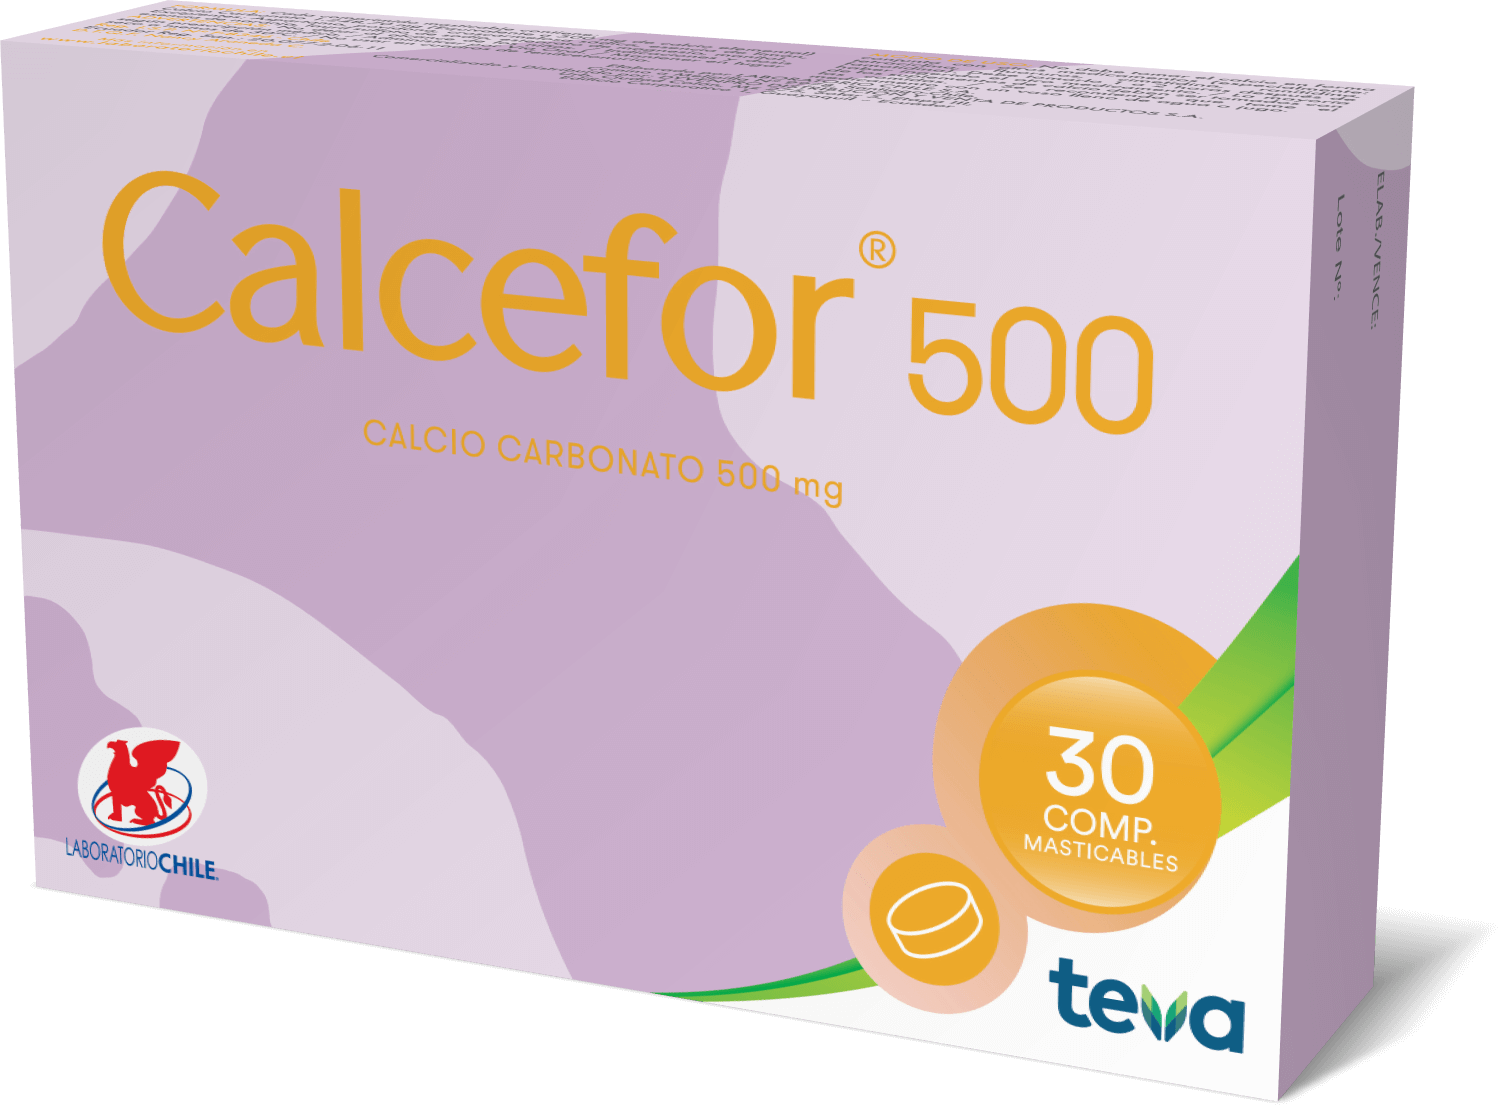 Calcefor 500 - 30 comprimidos